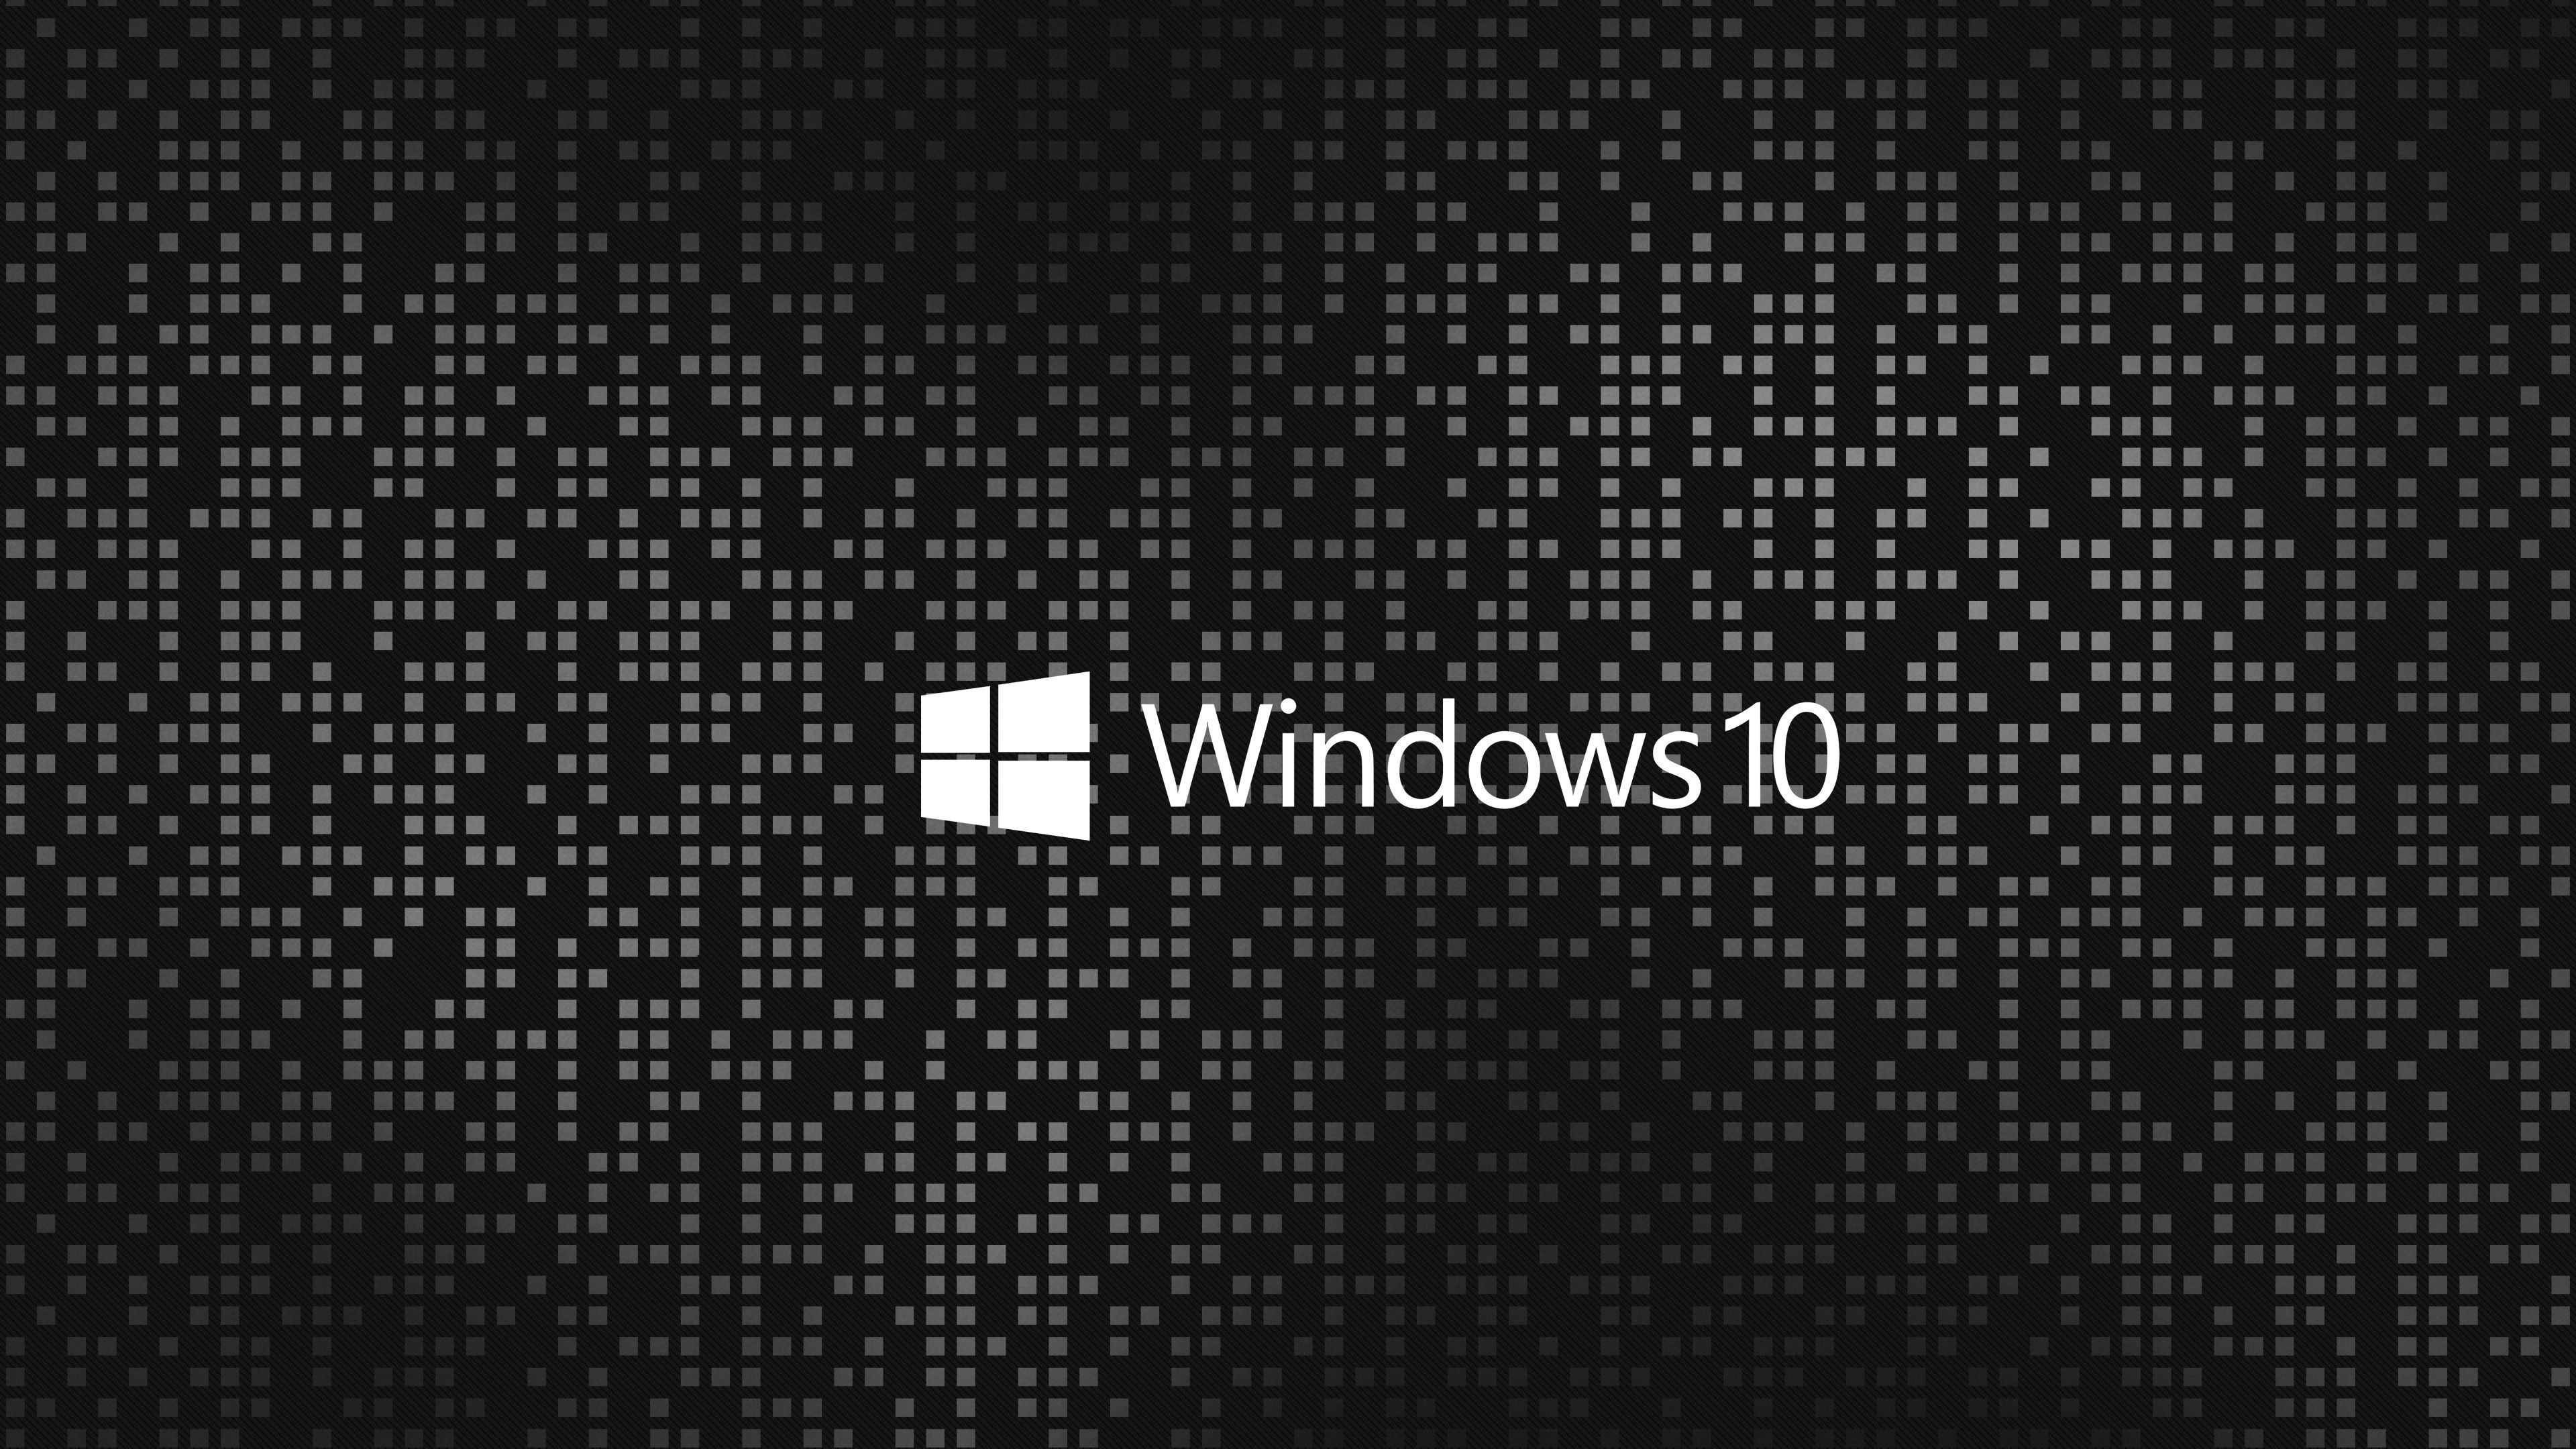 Hình nền Windows 10 đen 4k: Bạn muốn tìm một hình nền đẹp, chuẩn cao để trang trí máy tính Windows 10 của mình? Với hình nền đen 4k, bạn sẽ có một không gian làm việc thú vị và phong cách hơn.